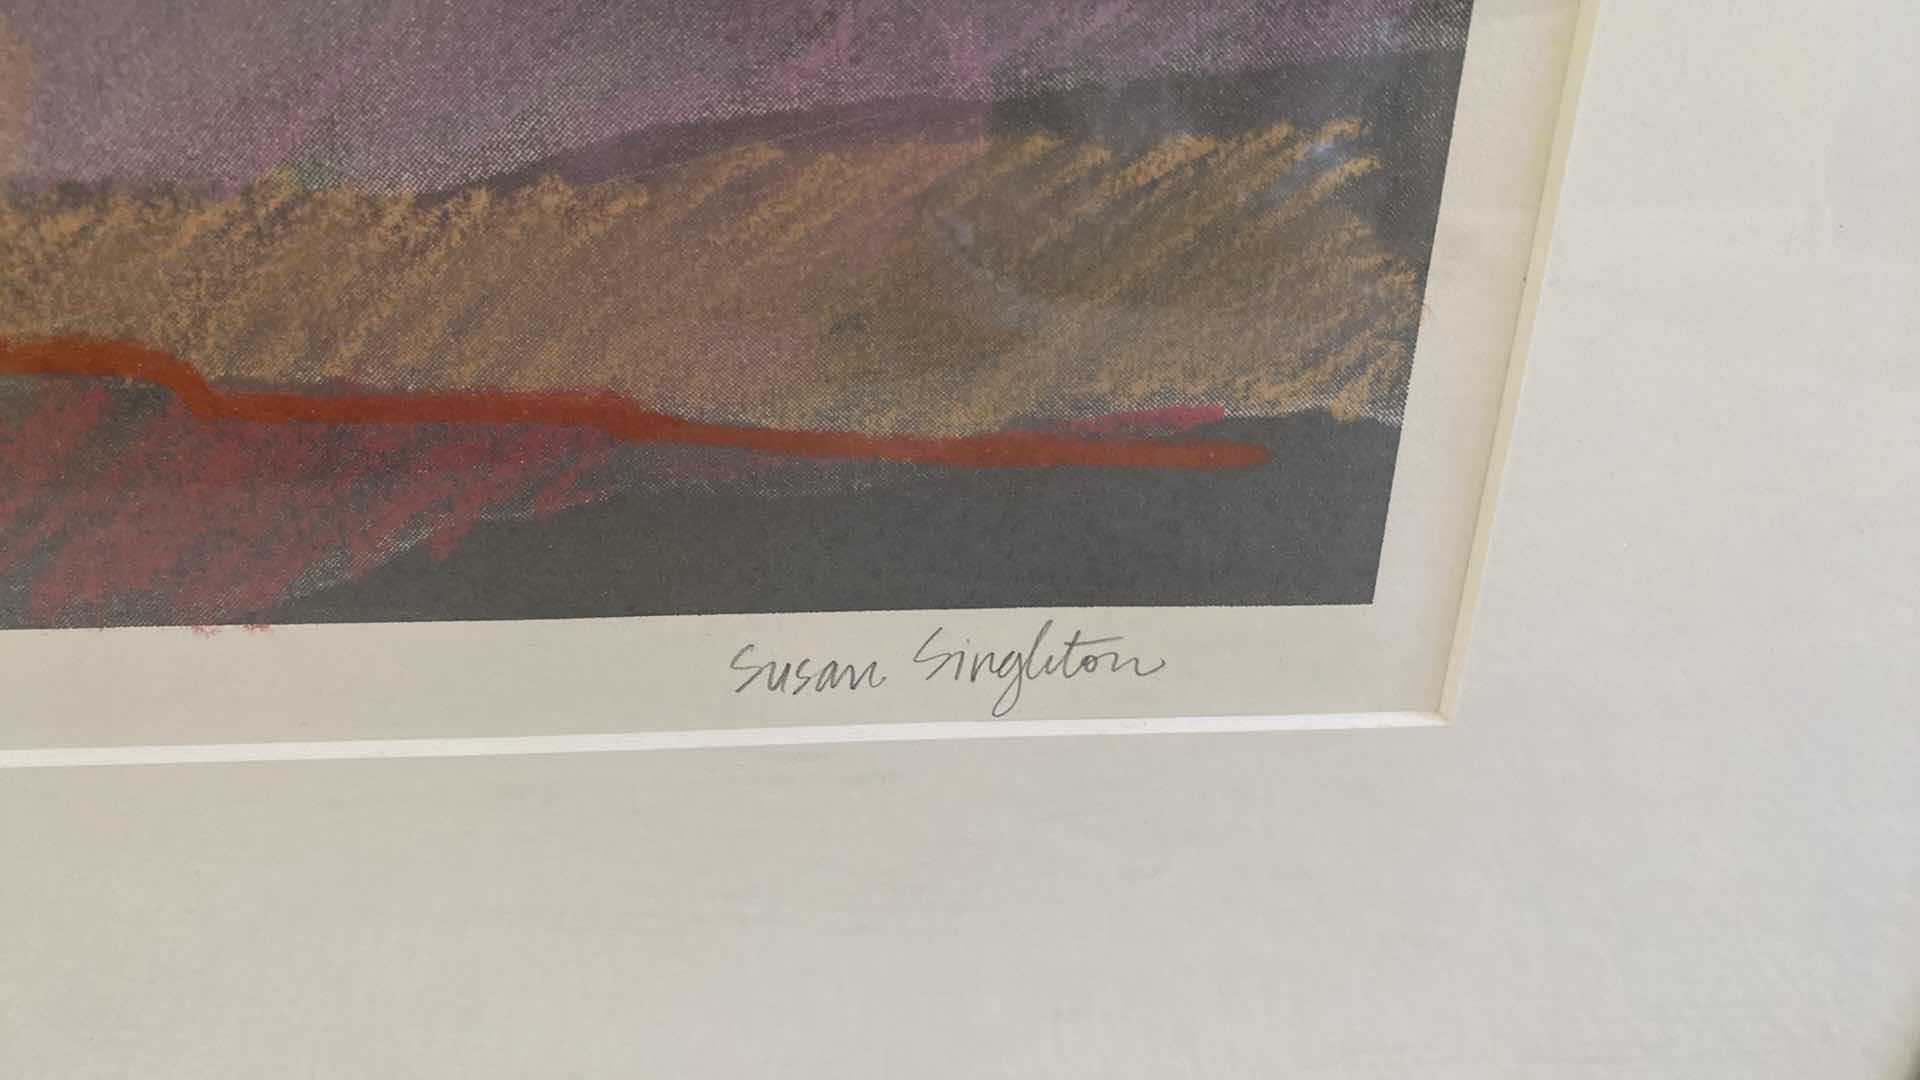 Photo 3 of FRAMED SIGNED  470/500 SUSAN SINGLETON HILLS LITHOGRAPH 25” x 19” including frame ARTWORK